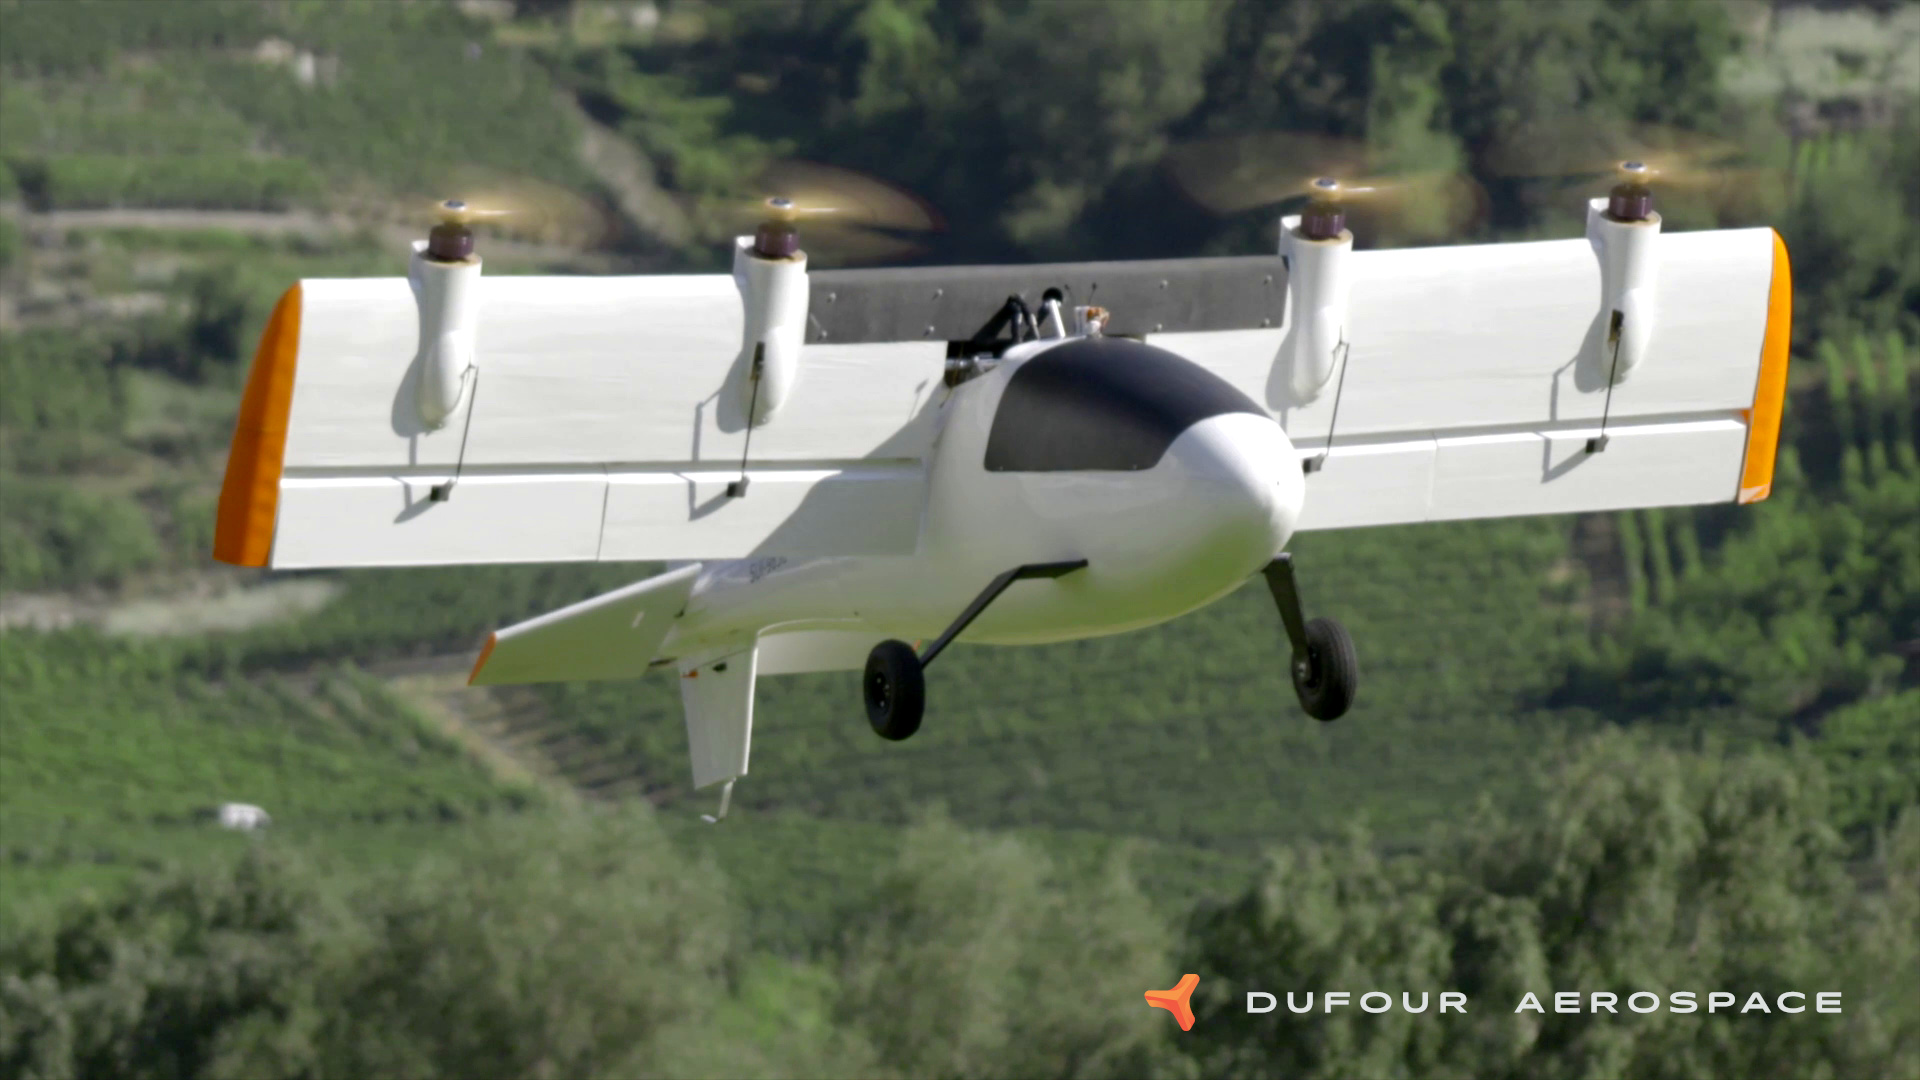 Dufour Aerospace